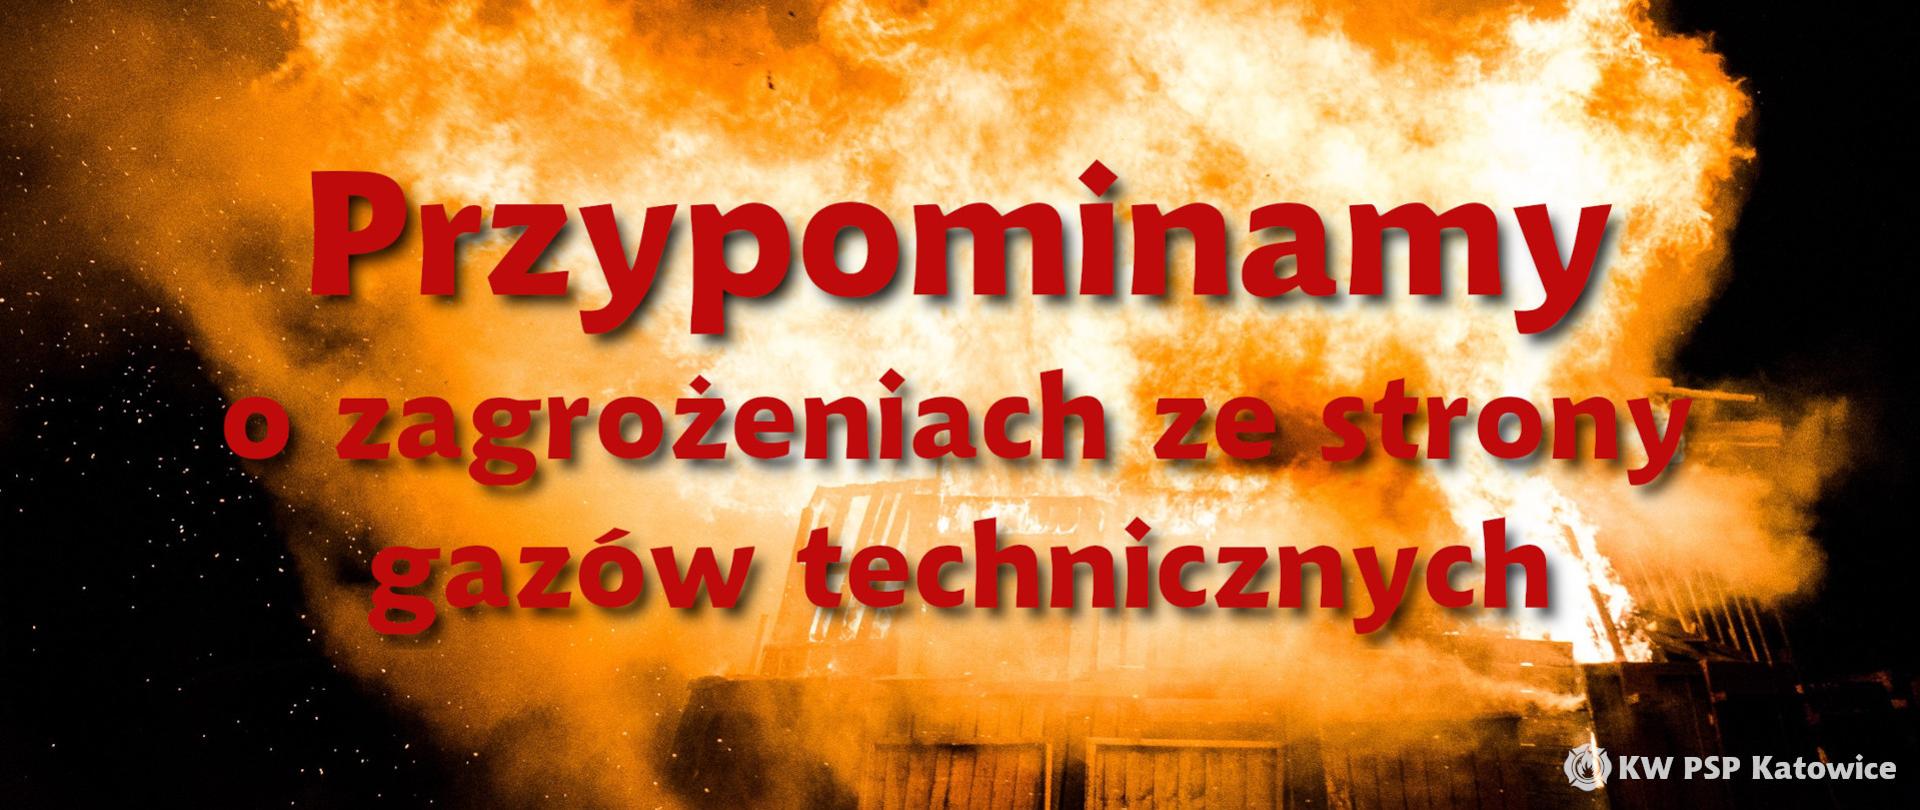 Ilustracja przedstawia na pierwszym planie napis "Przypominamy o zagrożeniach ze strony gazów technicznych" a w tle zdjęcie wybuchu i ognia. W prawym dolnym rogu napis KW PSP w Katowicach.